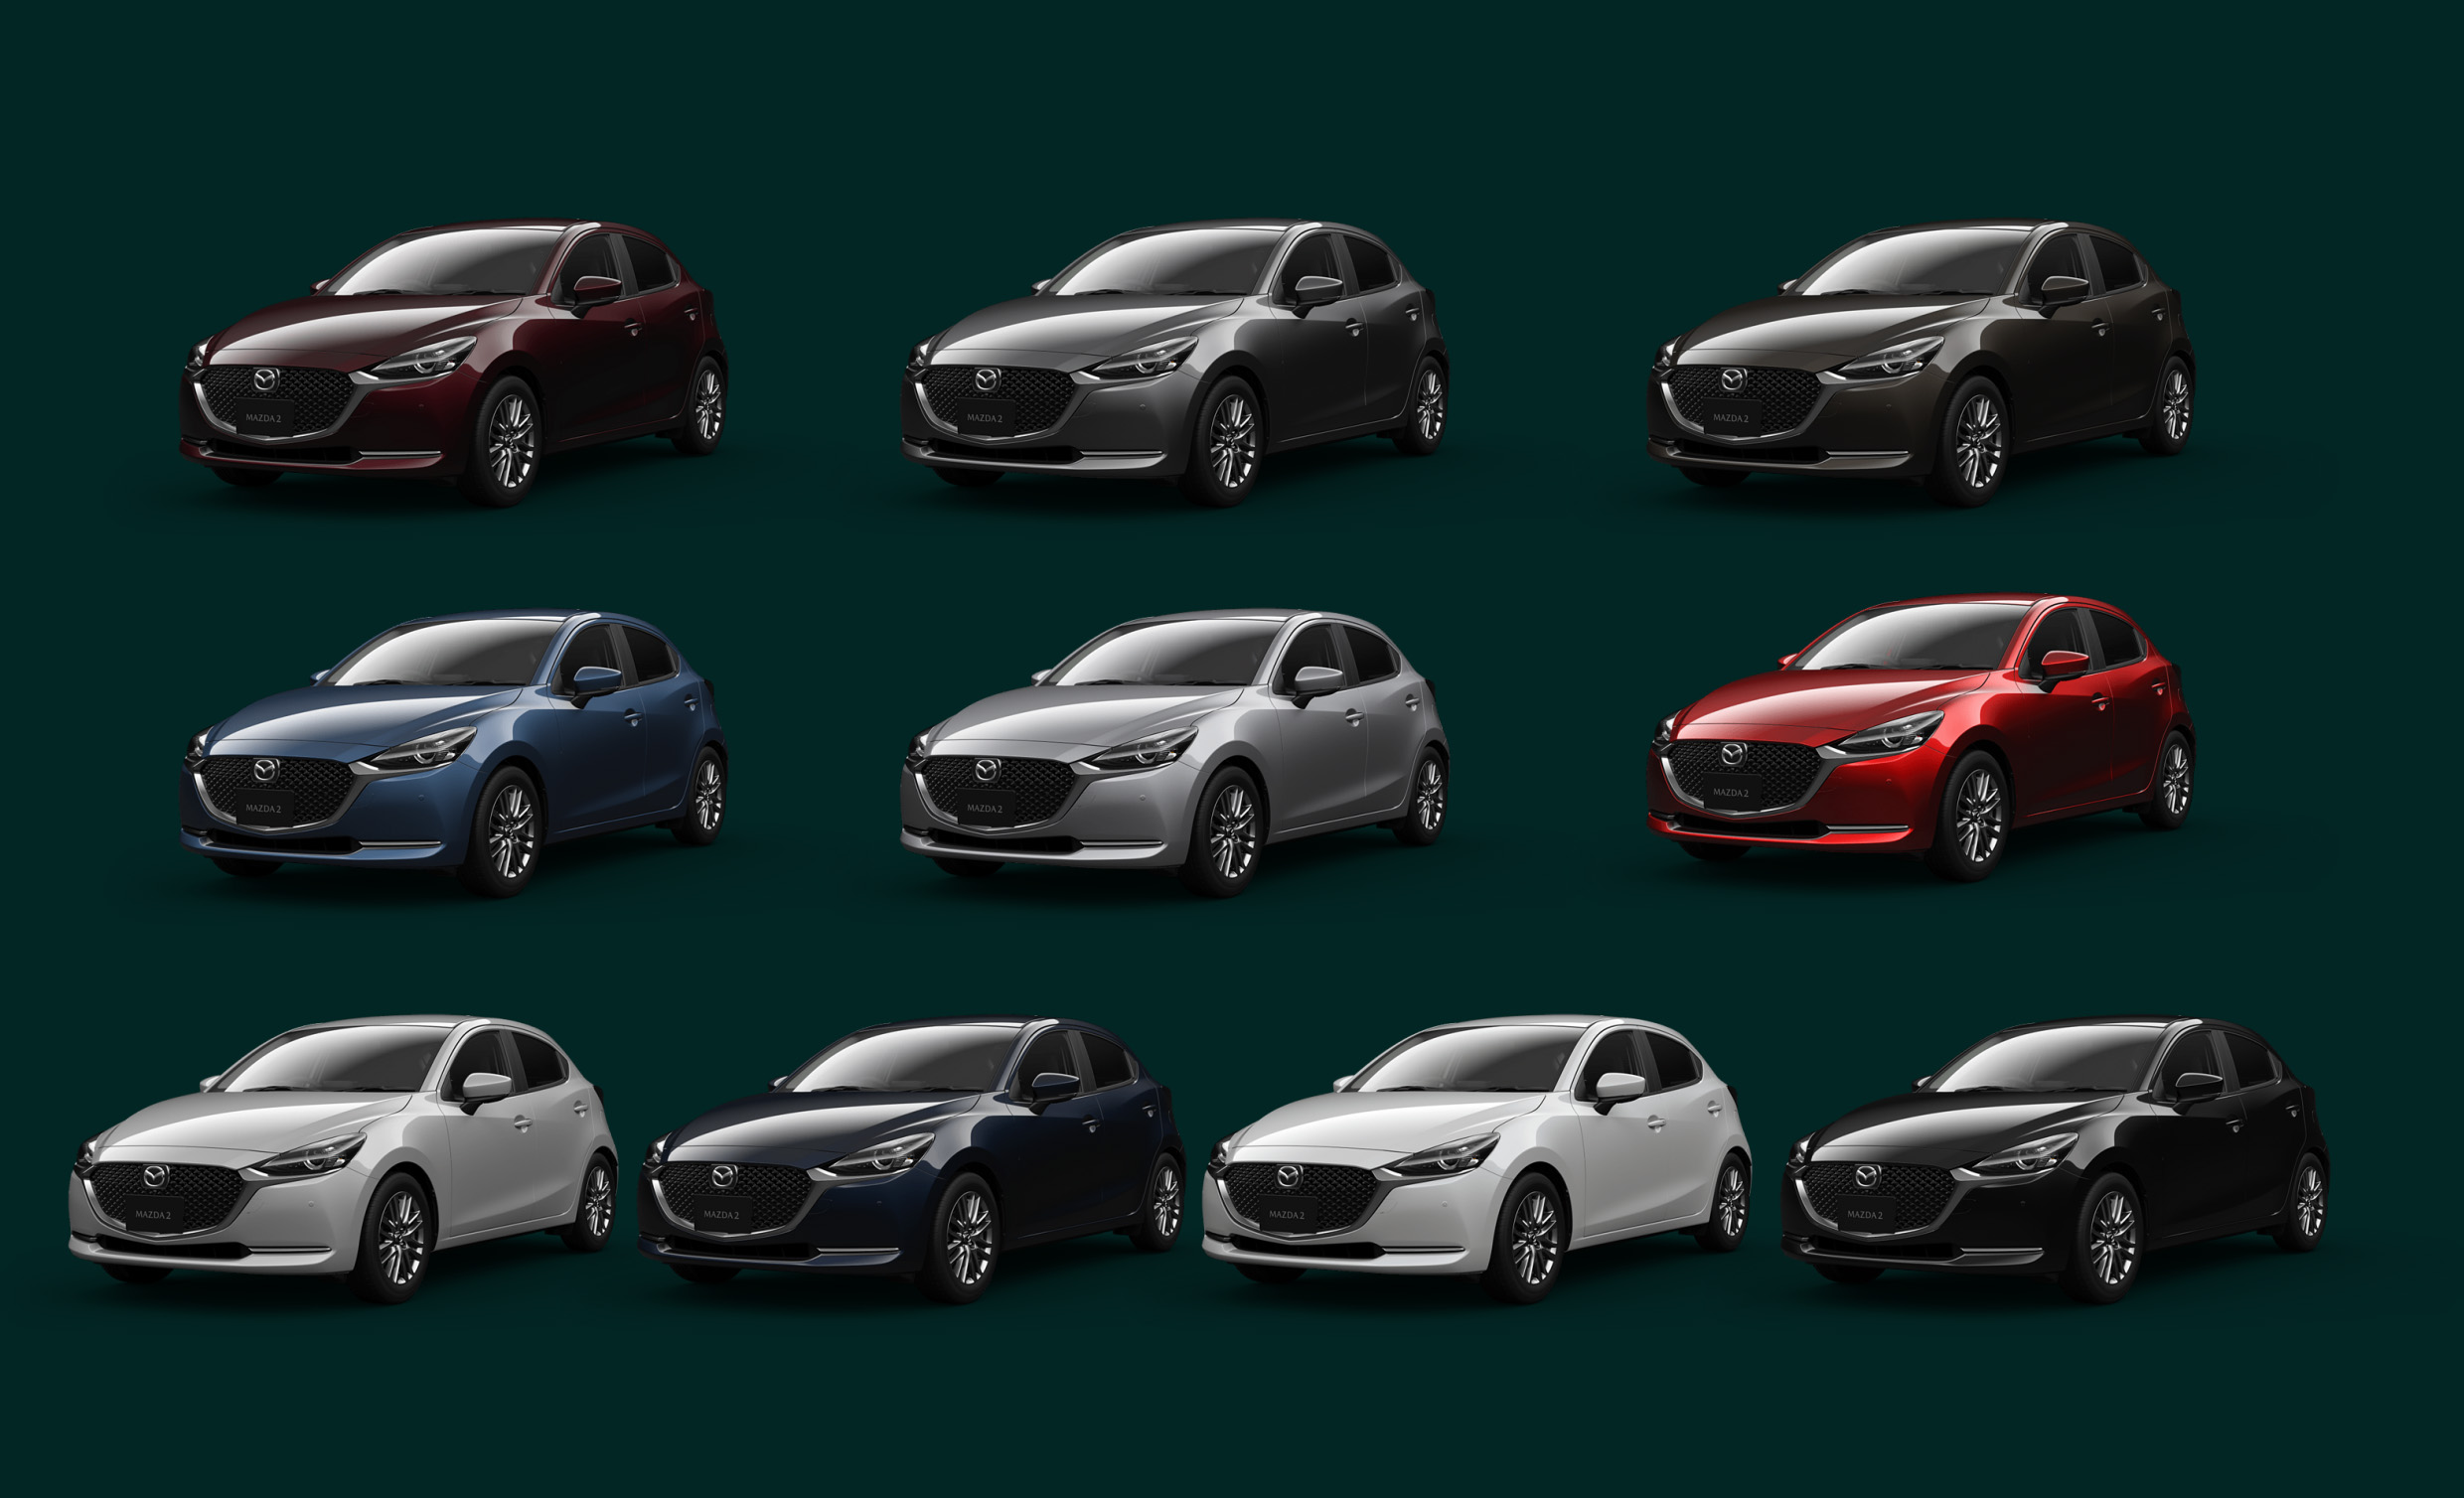 10 สีตัวถัง Mazda2 Hatchback Minor Change ในญิ่ปุ่น